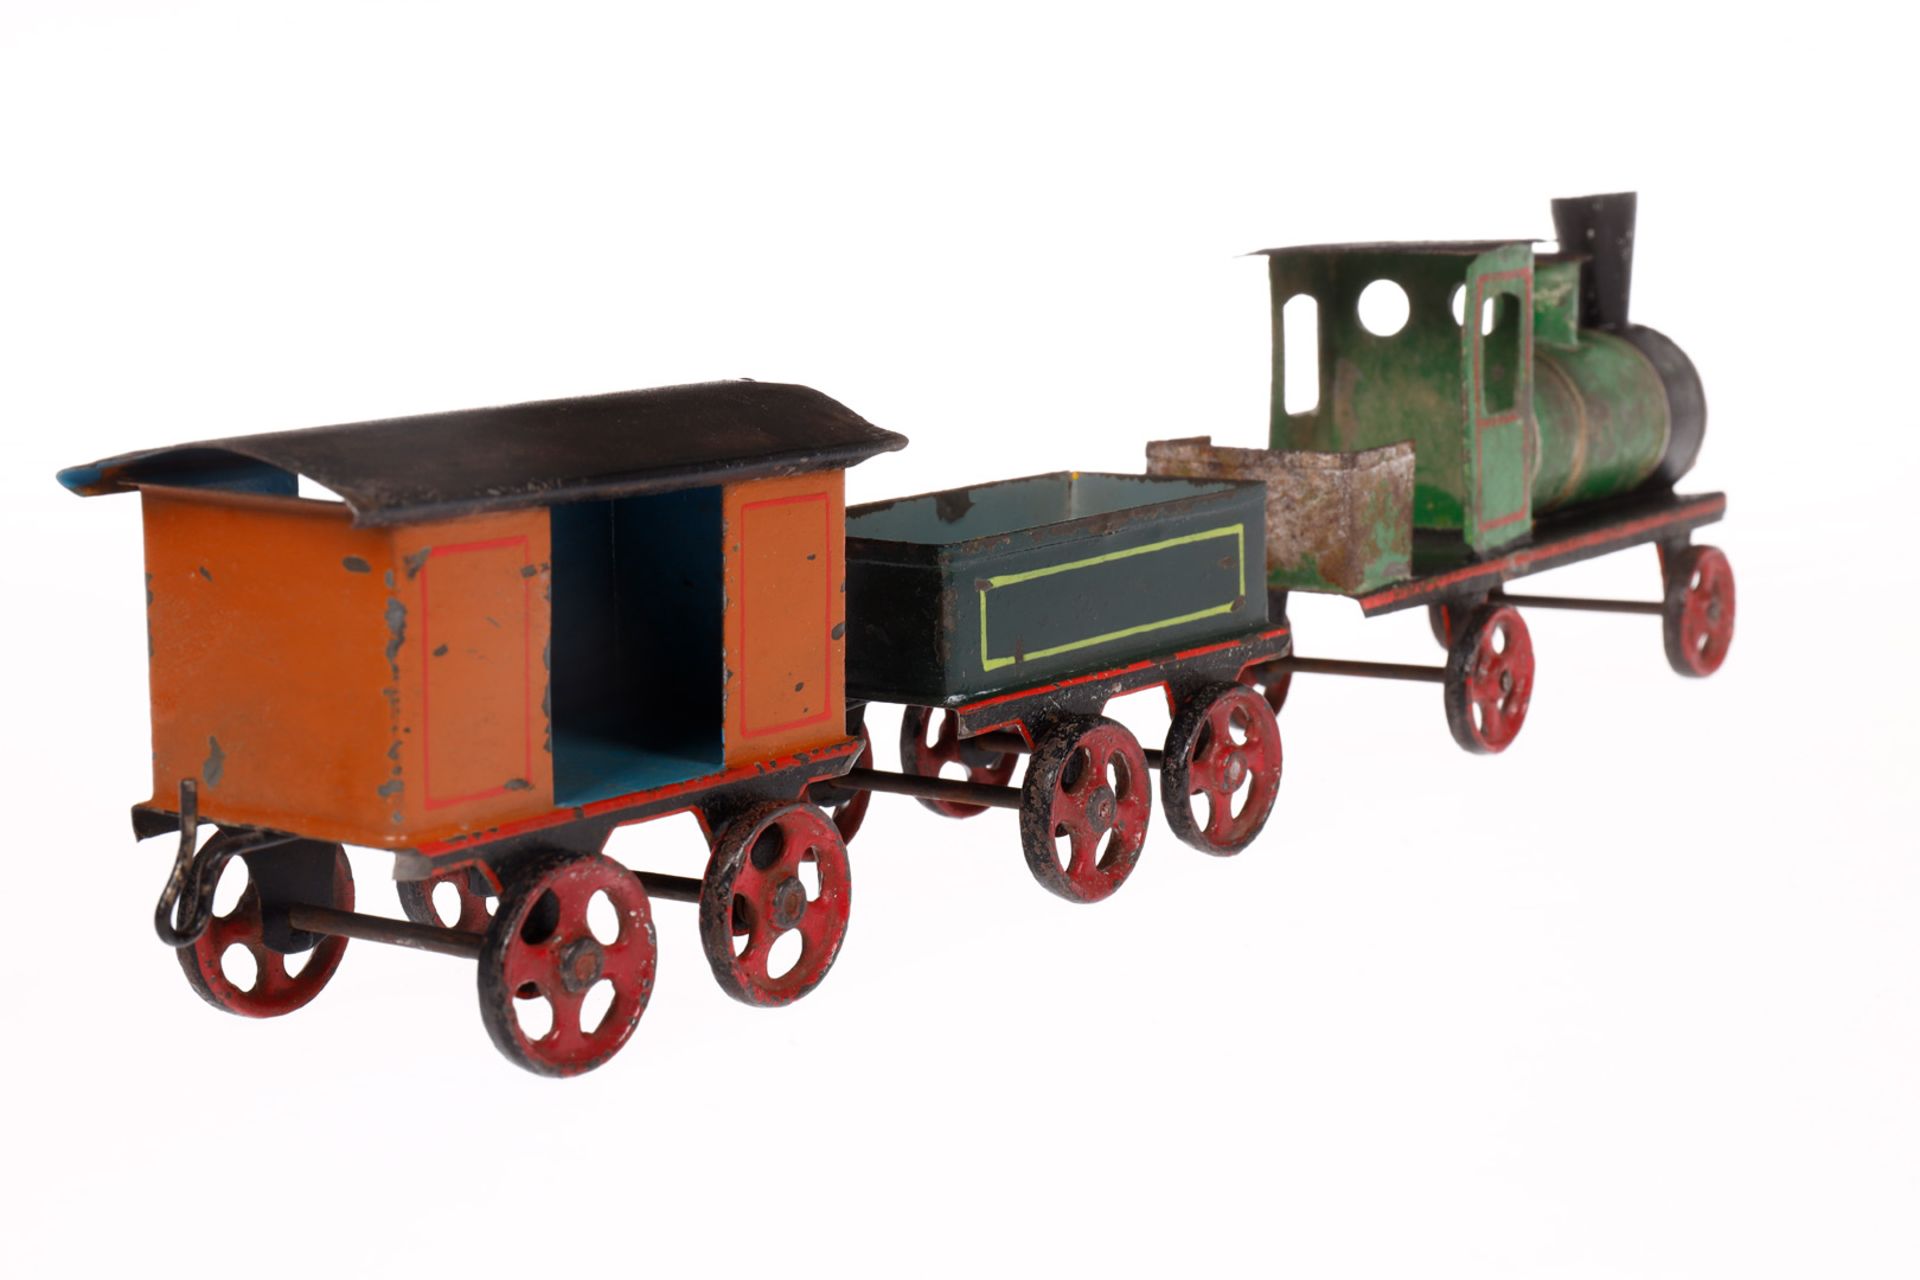 Sehr früher Bodenläuferzug, Spurweite 50 mm, Lok mit Tender und 2 Güterwagen, Gussräder, Lok tw - Image 2 of 6